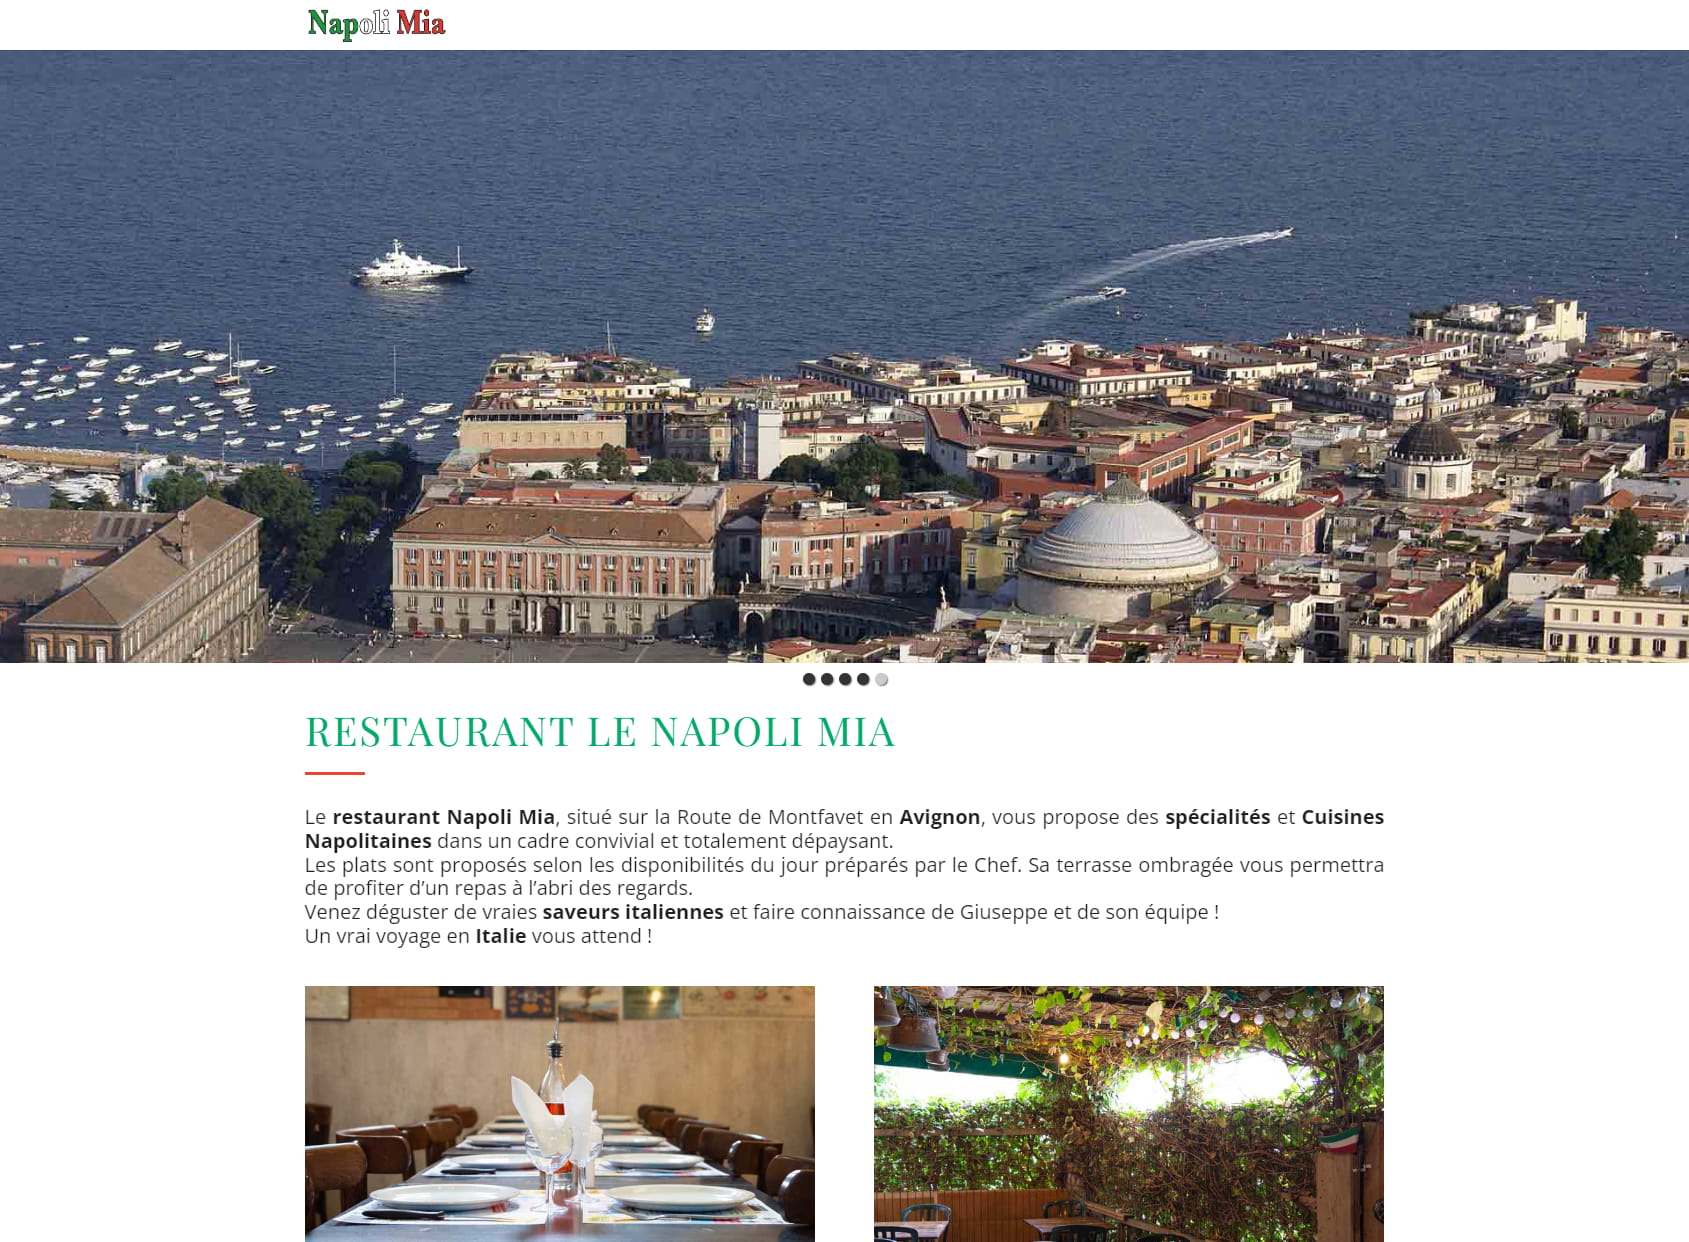 Napoli Mia Restaurant